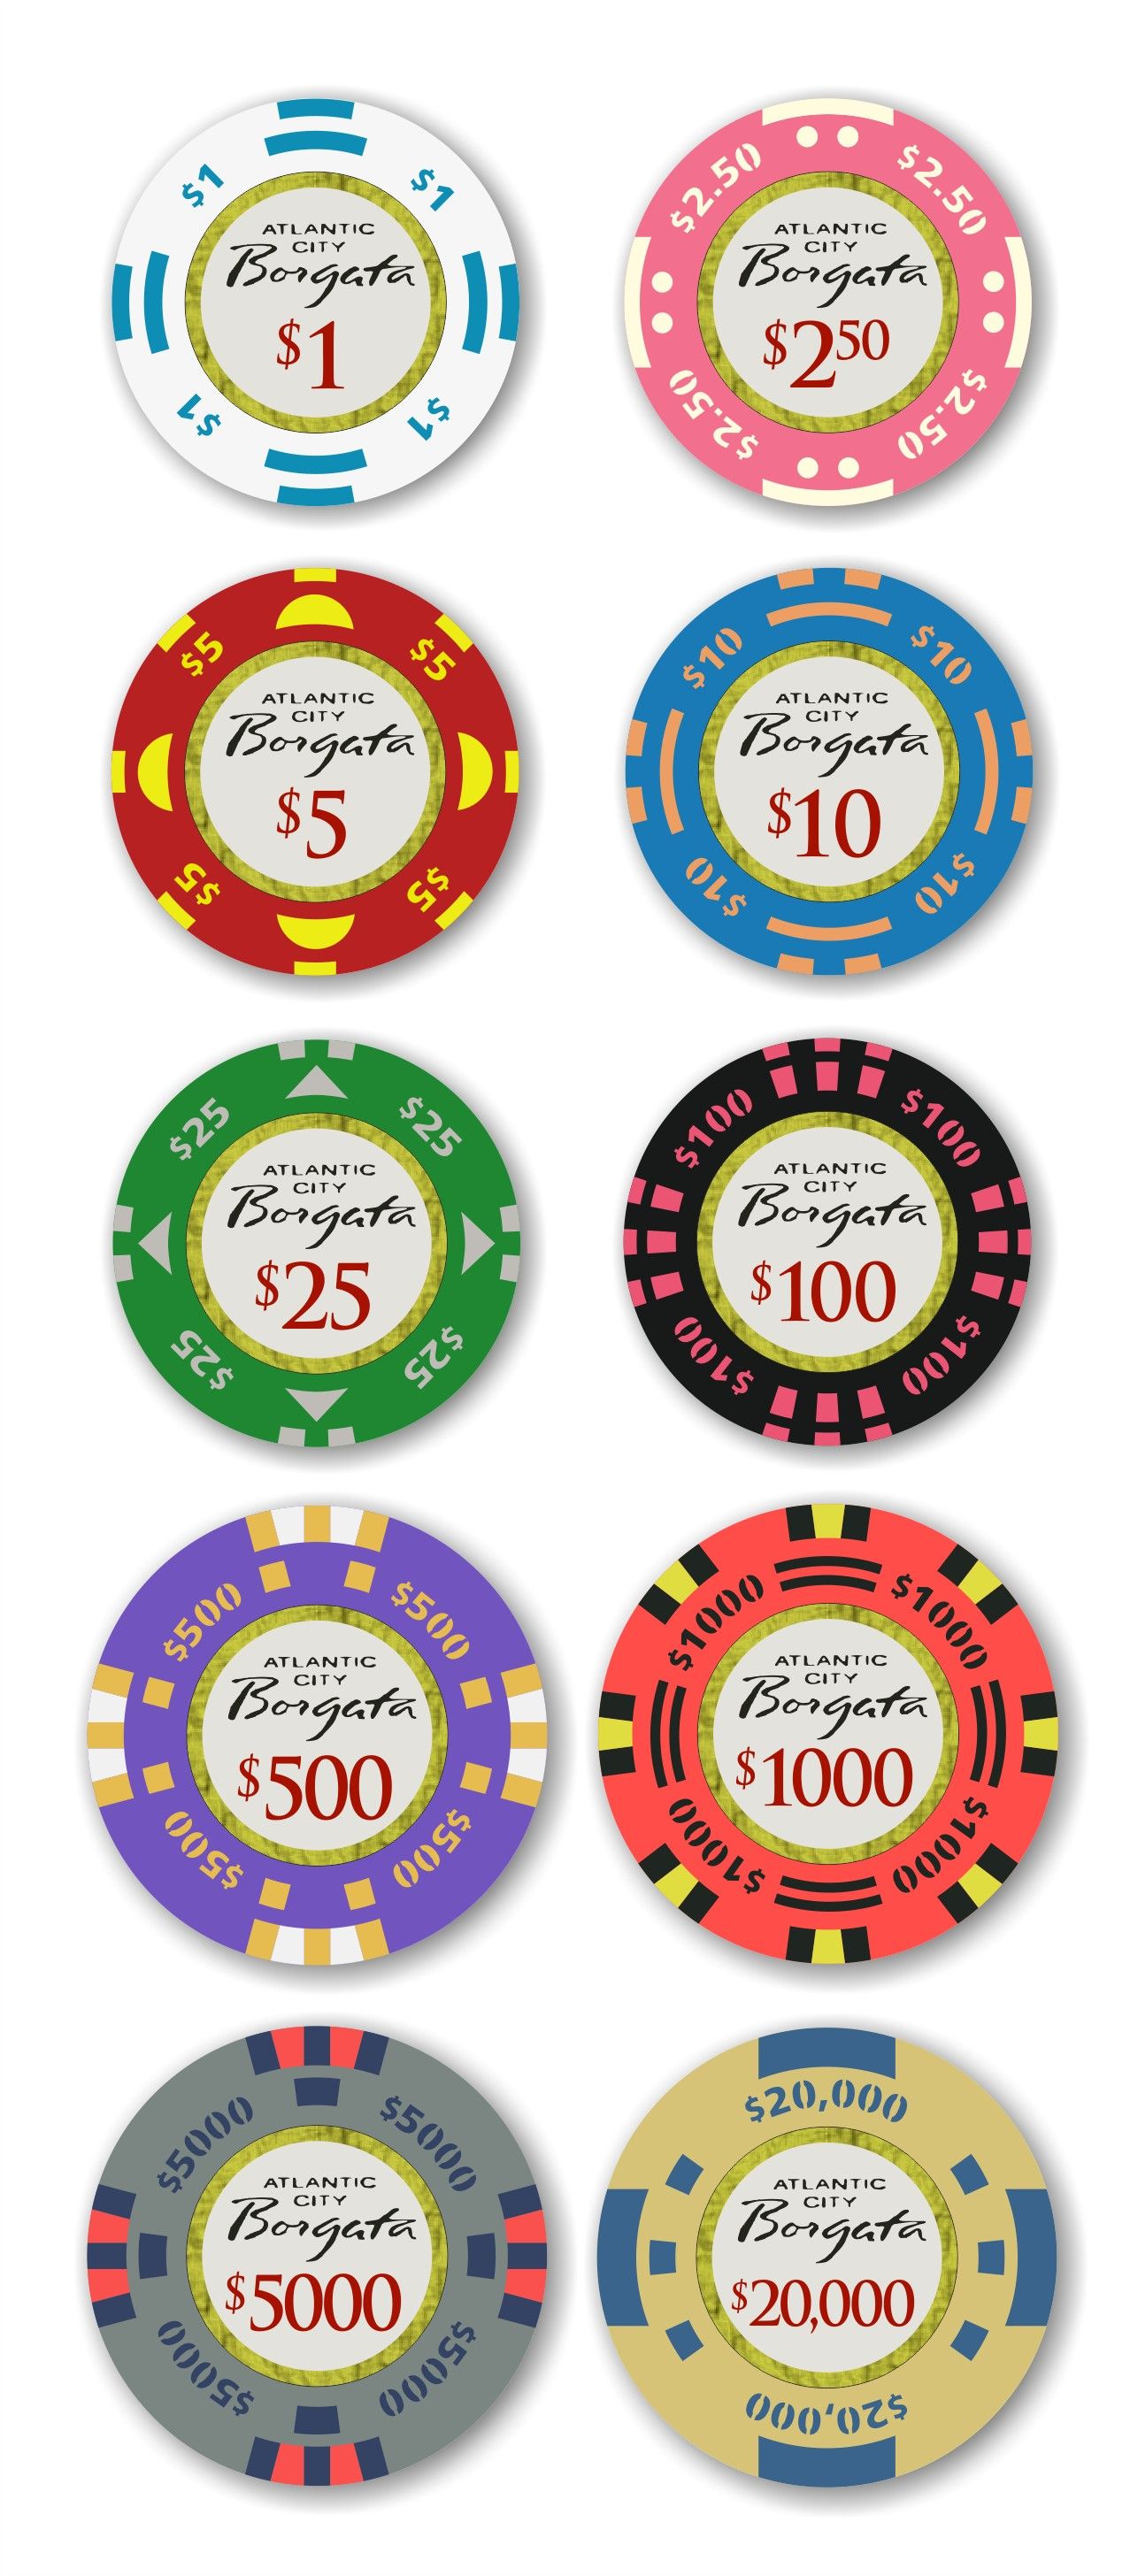 $100 no deposit casino bonus